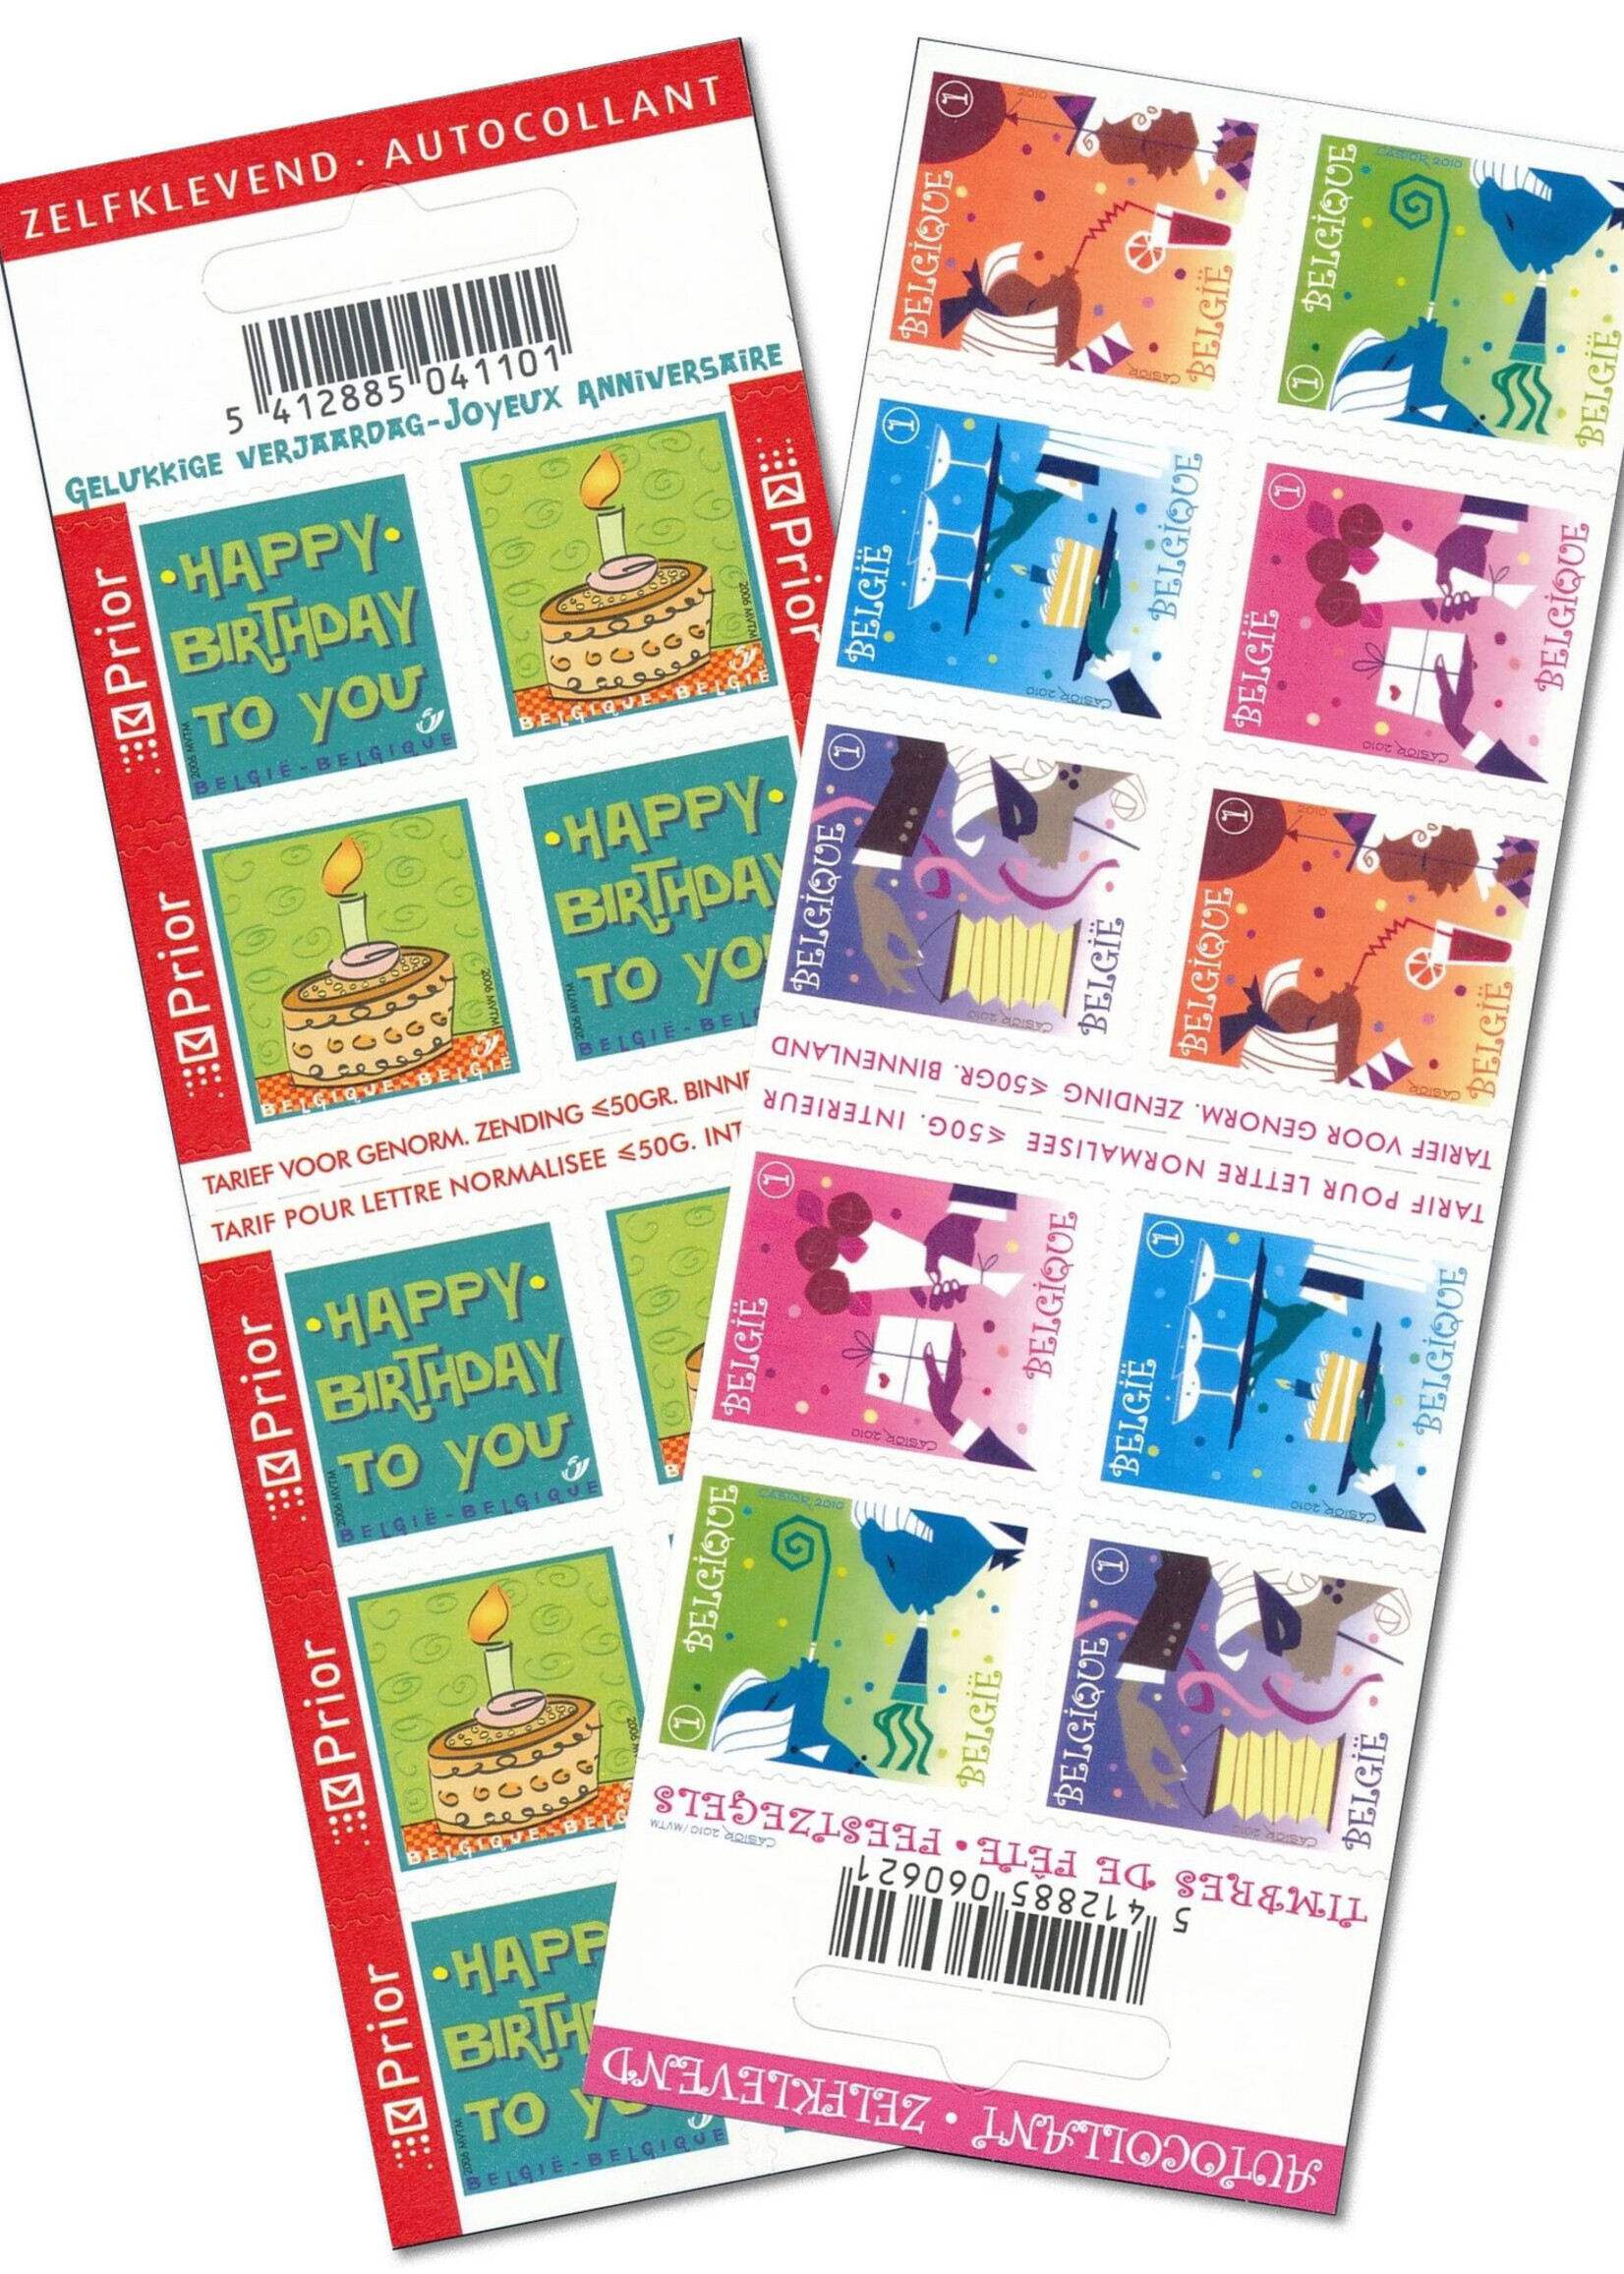 Thème Anniversaire - Carnet de 10 timbres autocollants - Tarif 1, Belgique